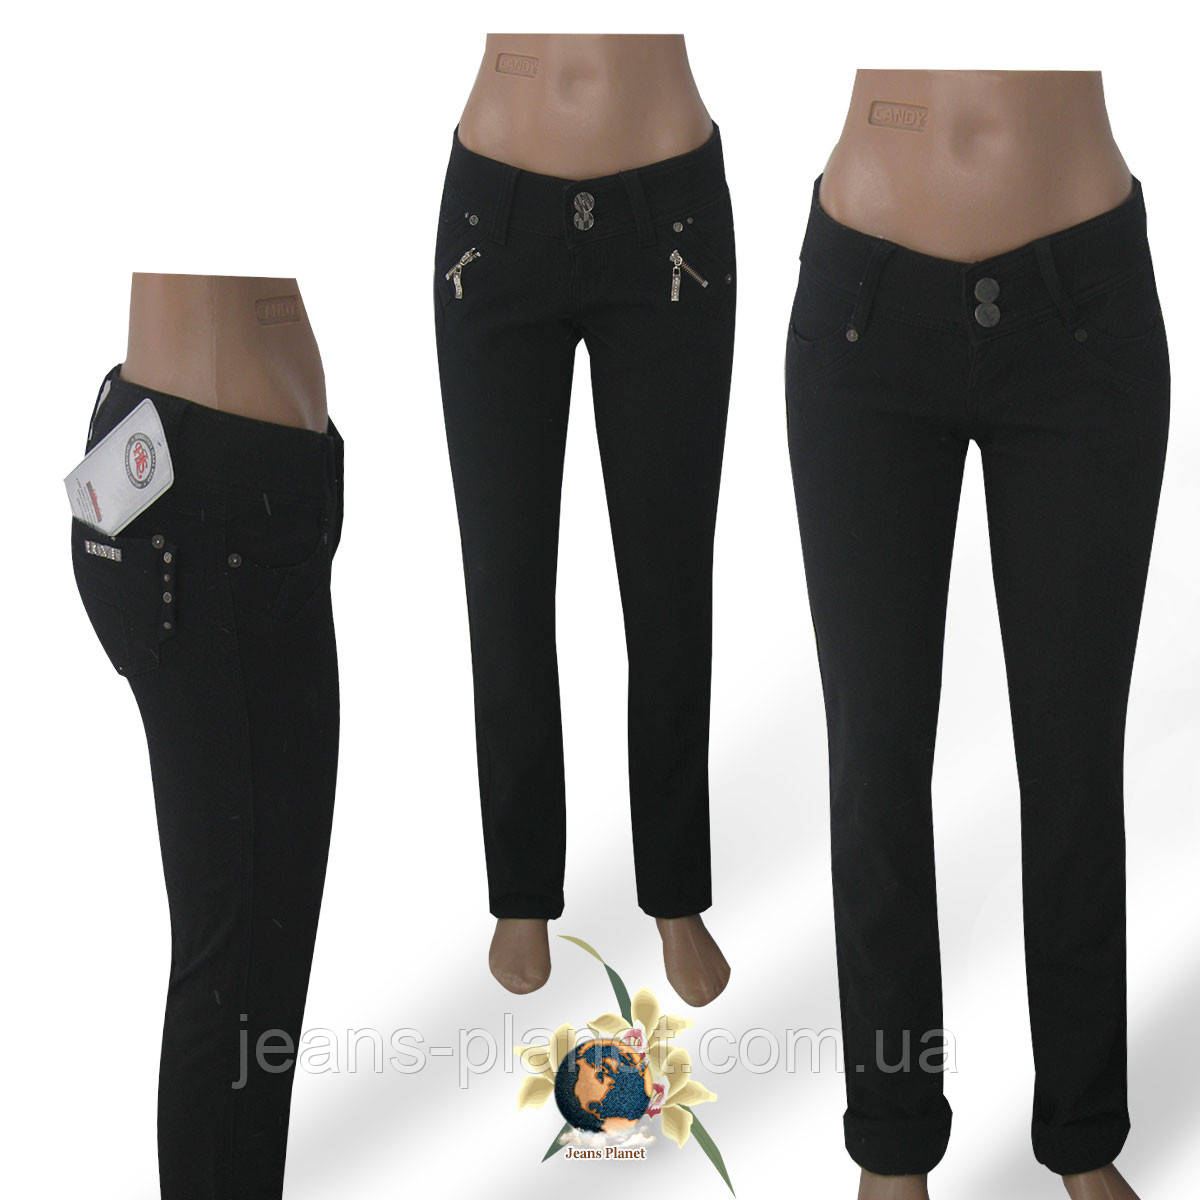 Женские узкие джинсы HLS 26-27 размер чёрного цвета на флисе.